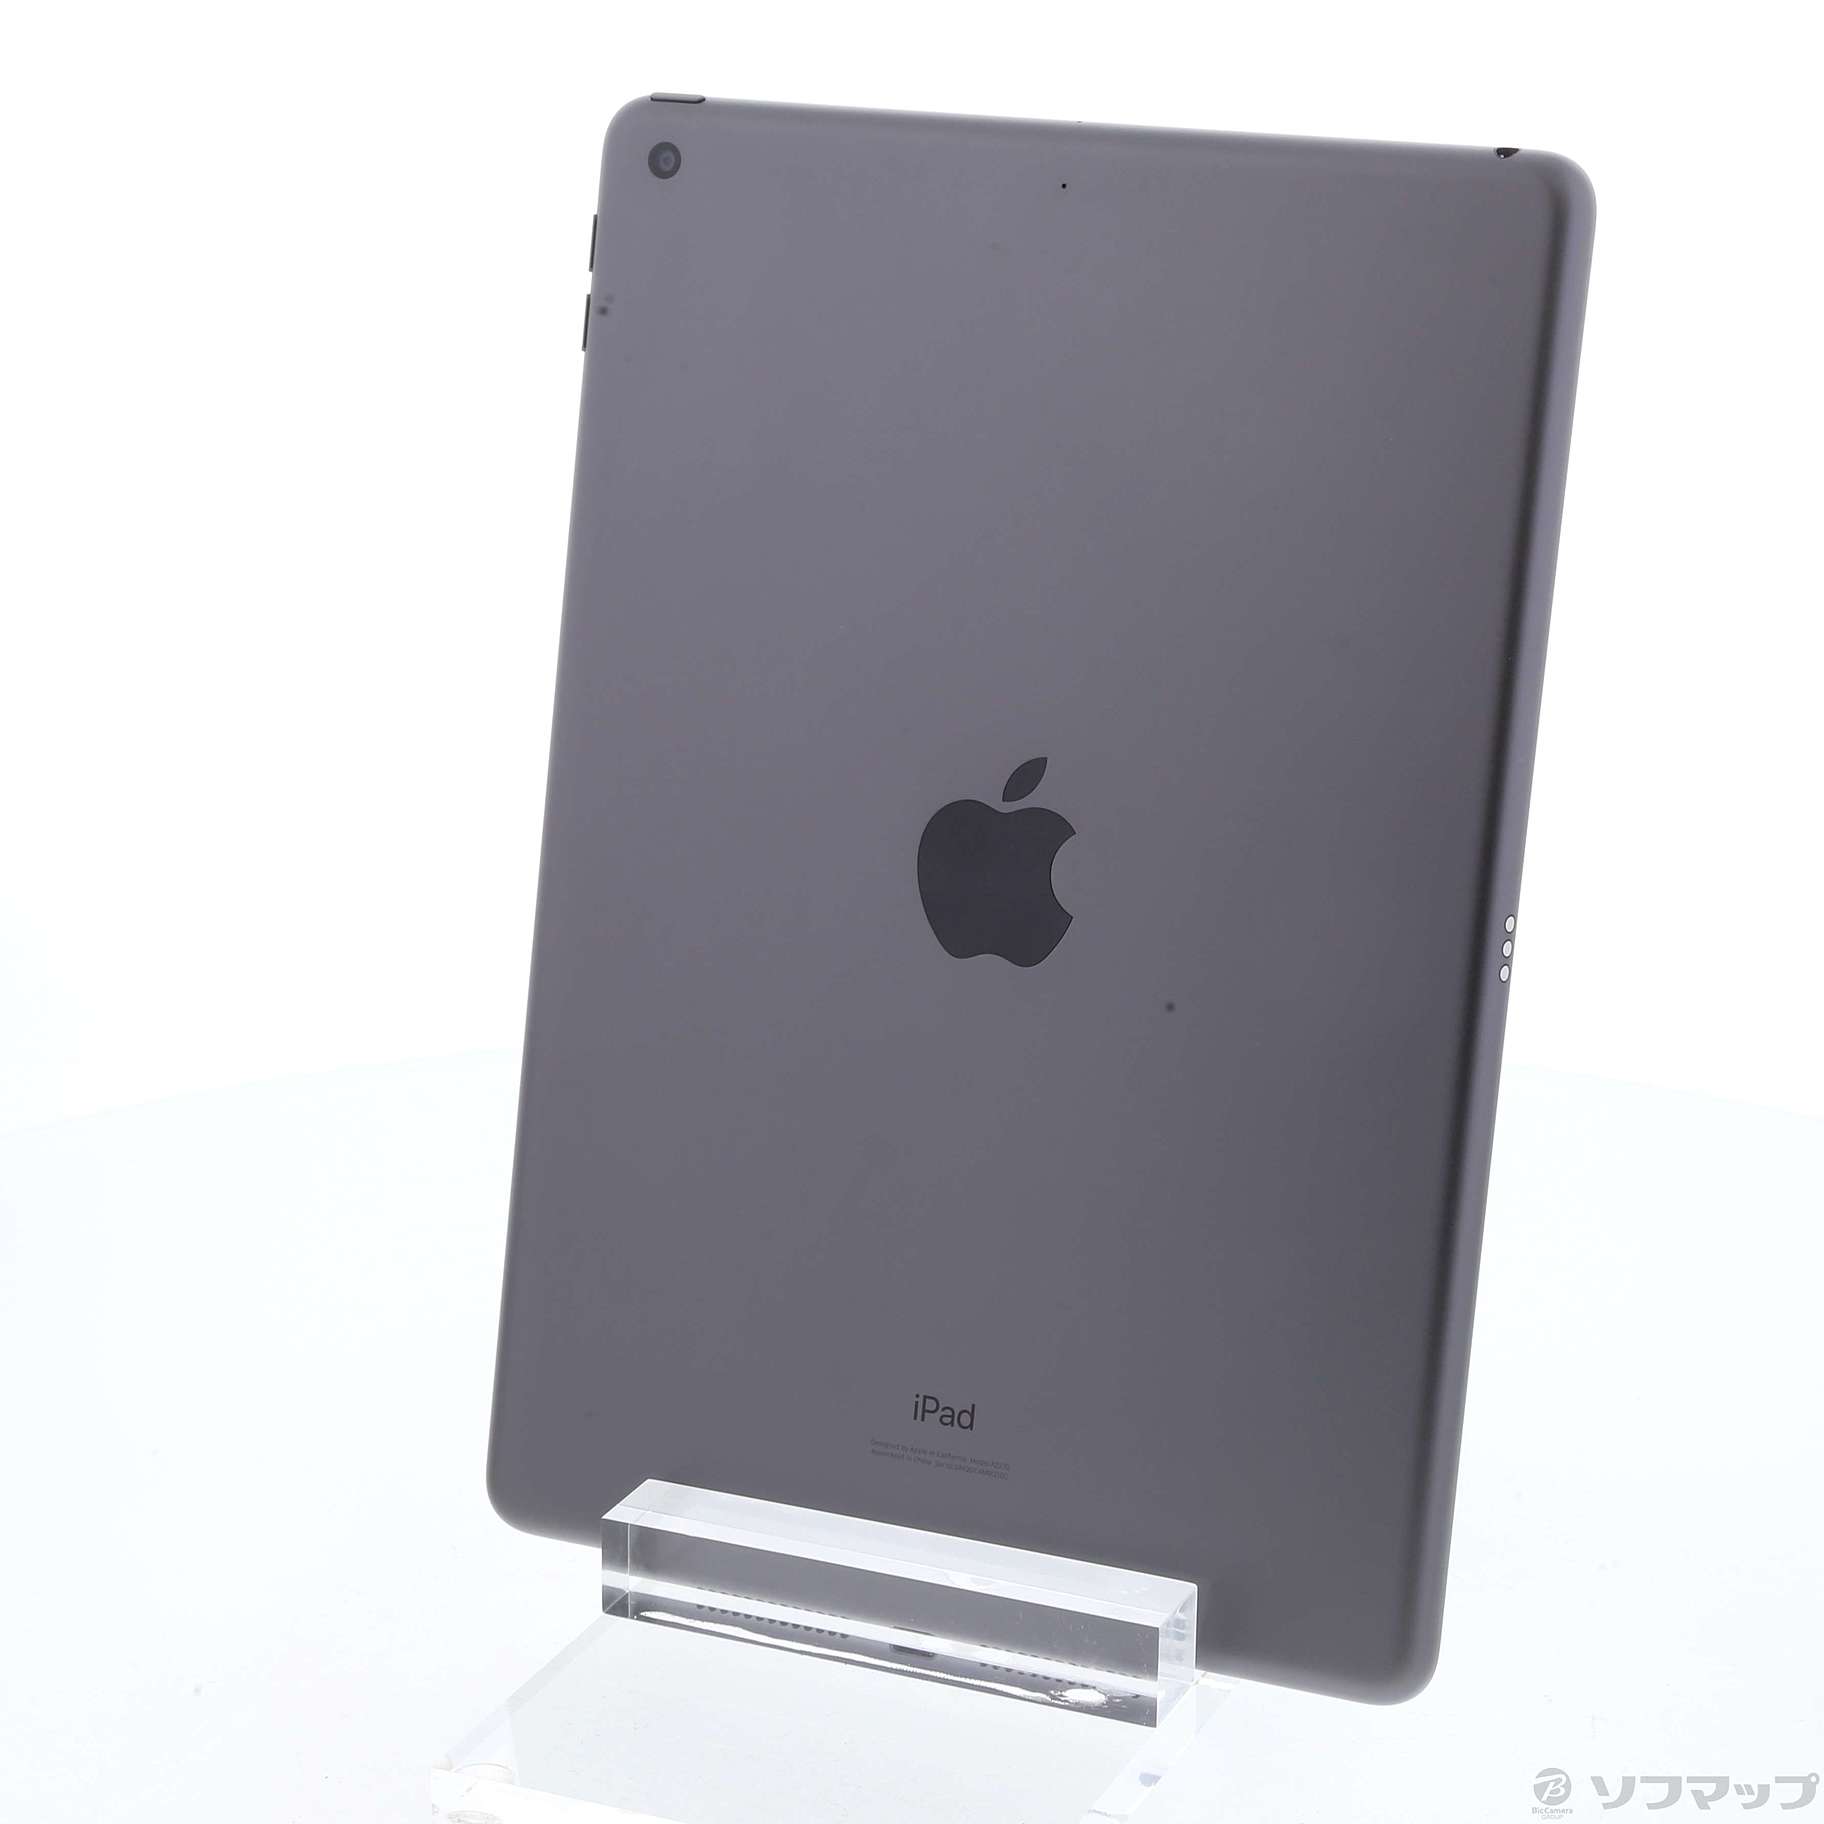 オンラインストア通販売 iPad MYL92J スペースグレイ 32GB 第8世代 タブレット